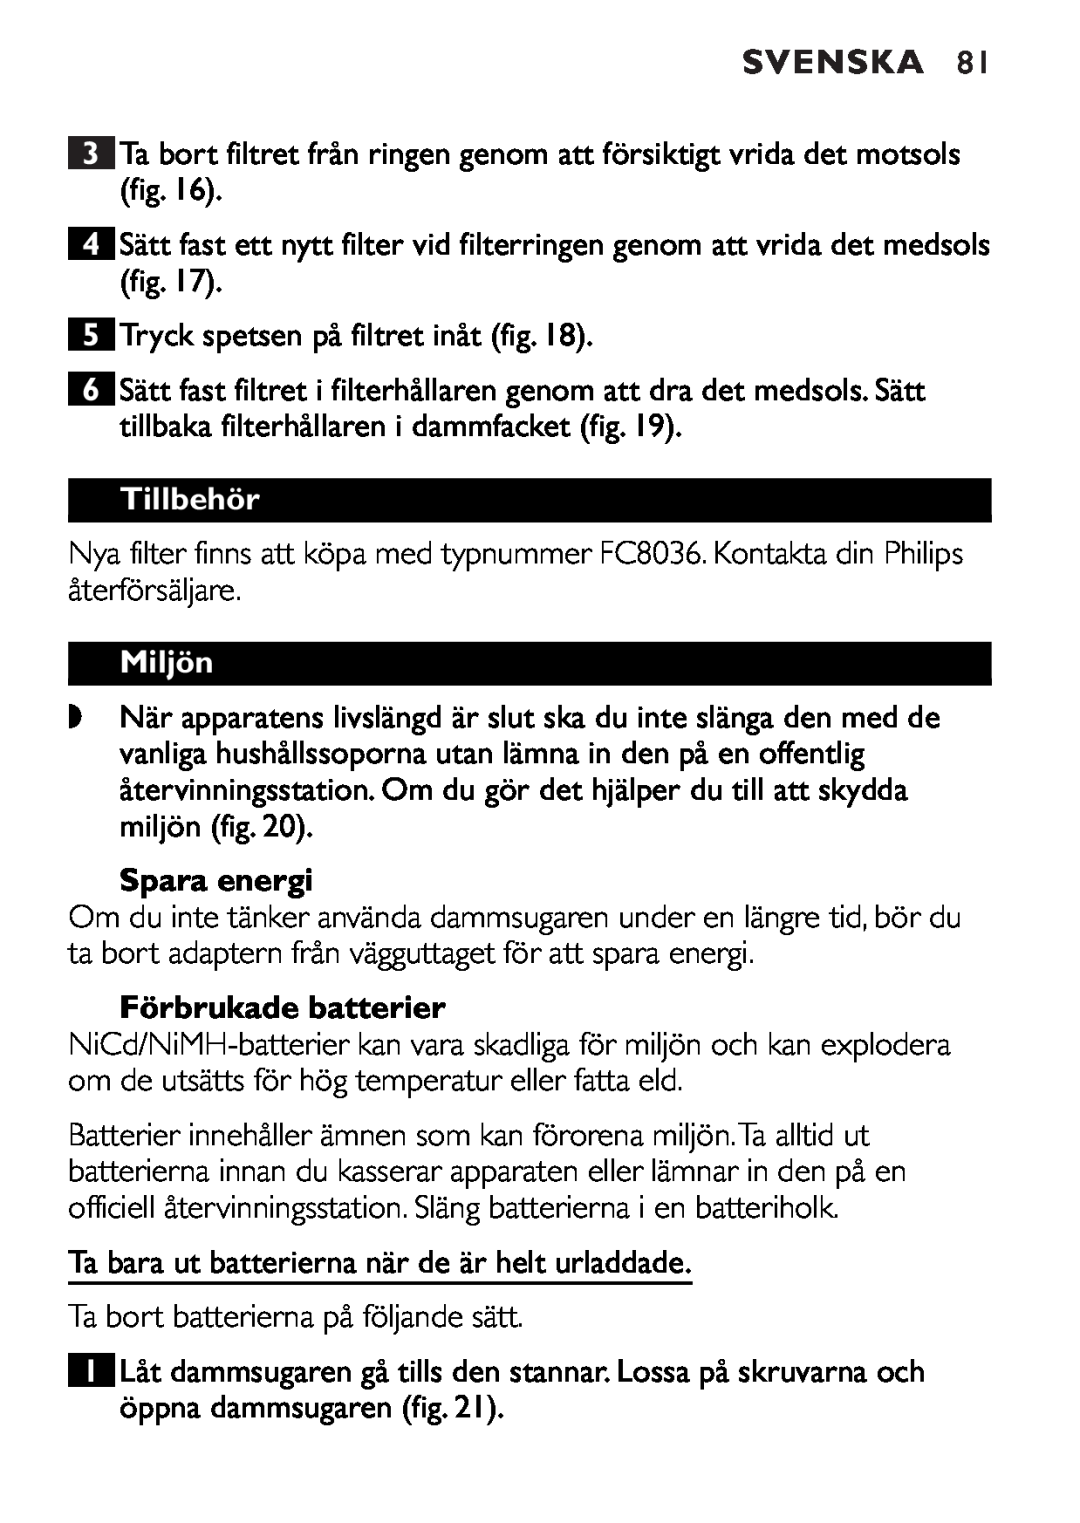 Philips FC6055 manual Tillbehör, Miljön, Spara energi, Förbrukade batterier, Svenska 